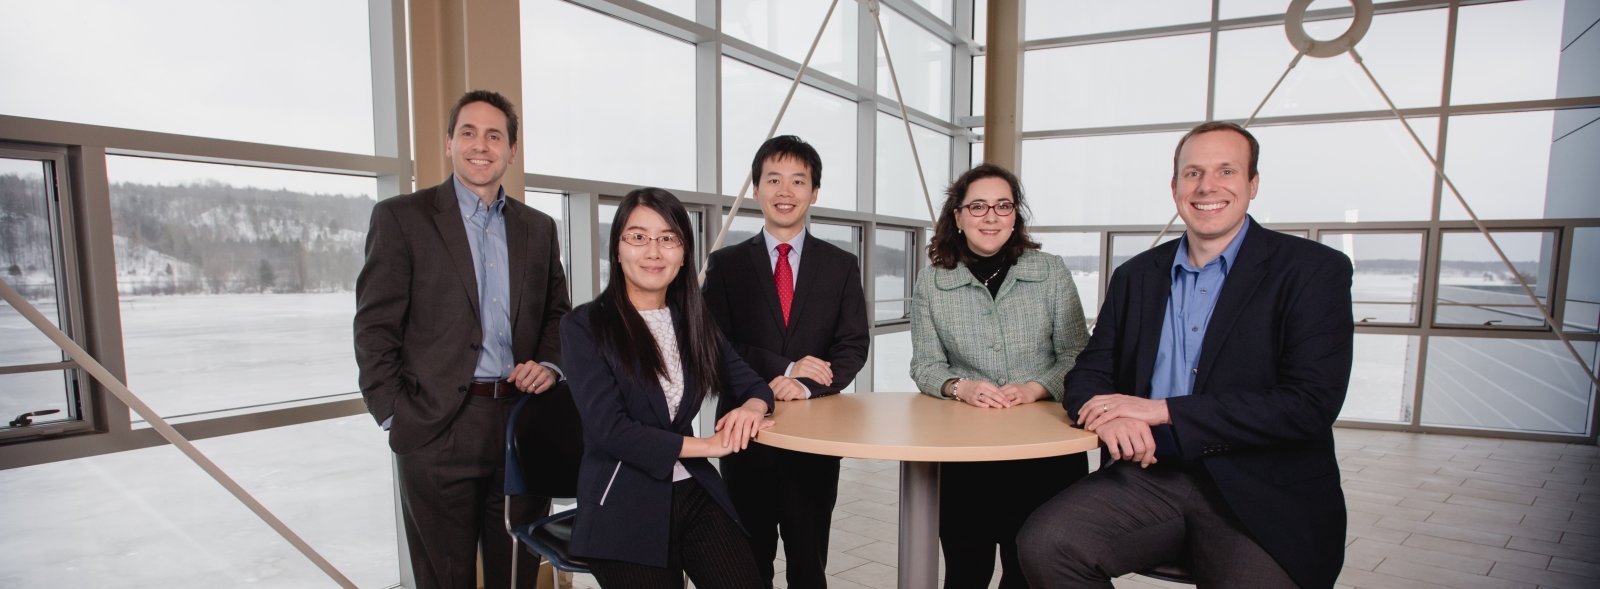 Michigan Tech's award winning researchers Jason Carter, Zhaohui Wang, Xiaohu Xia, Lucia Gauchia, and Stephen Techtmann.